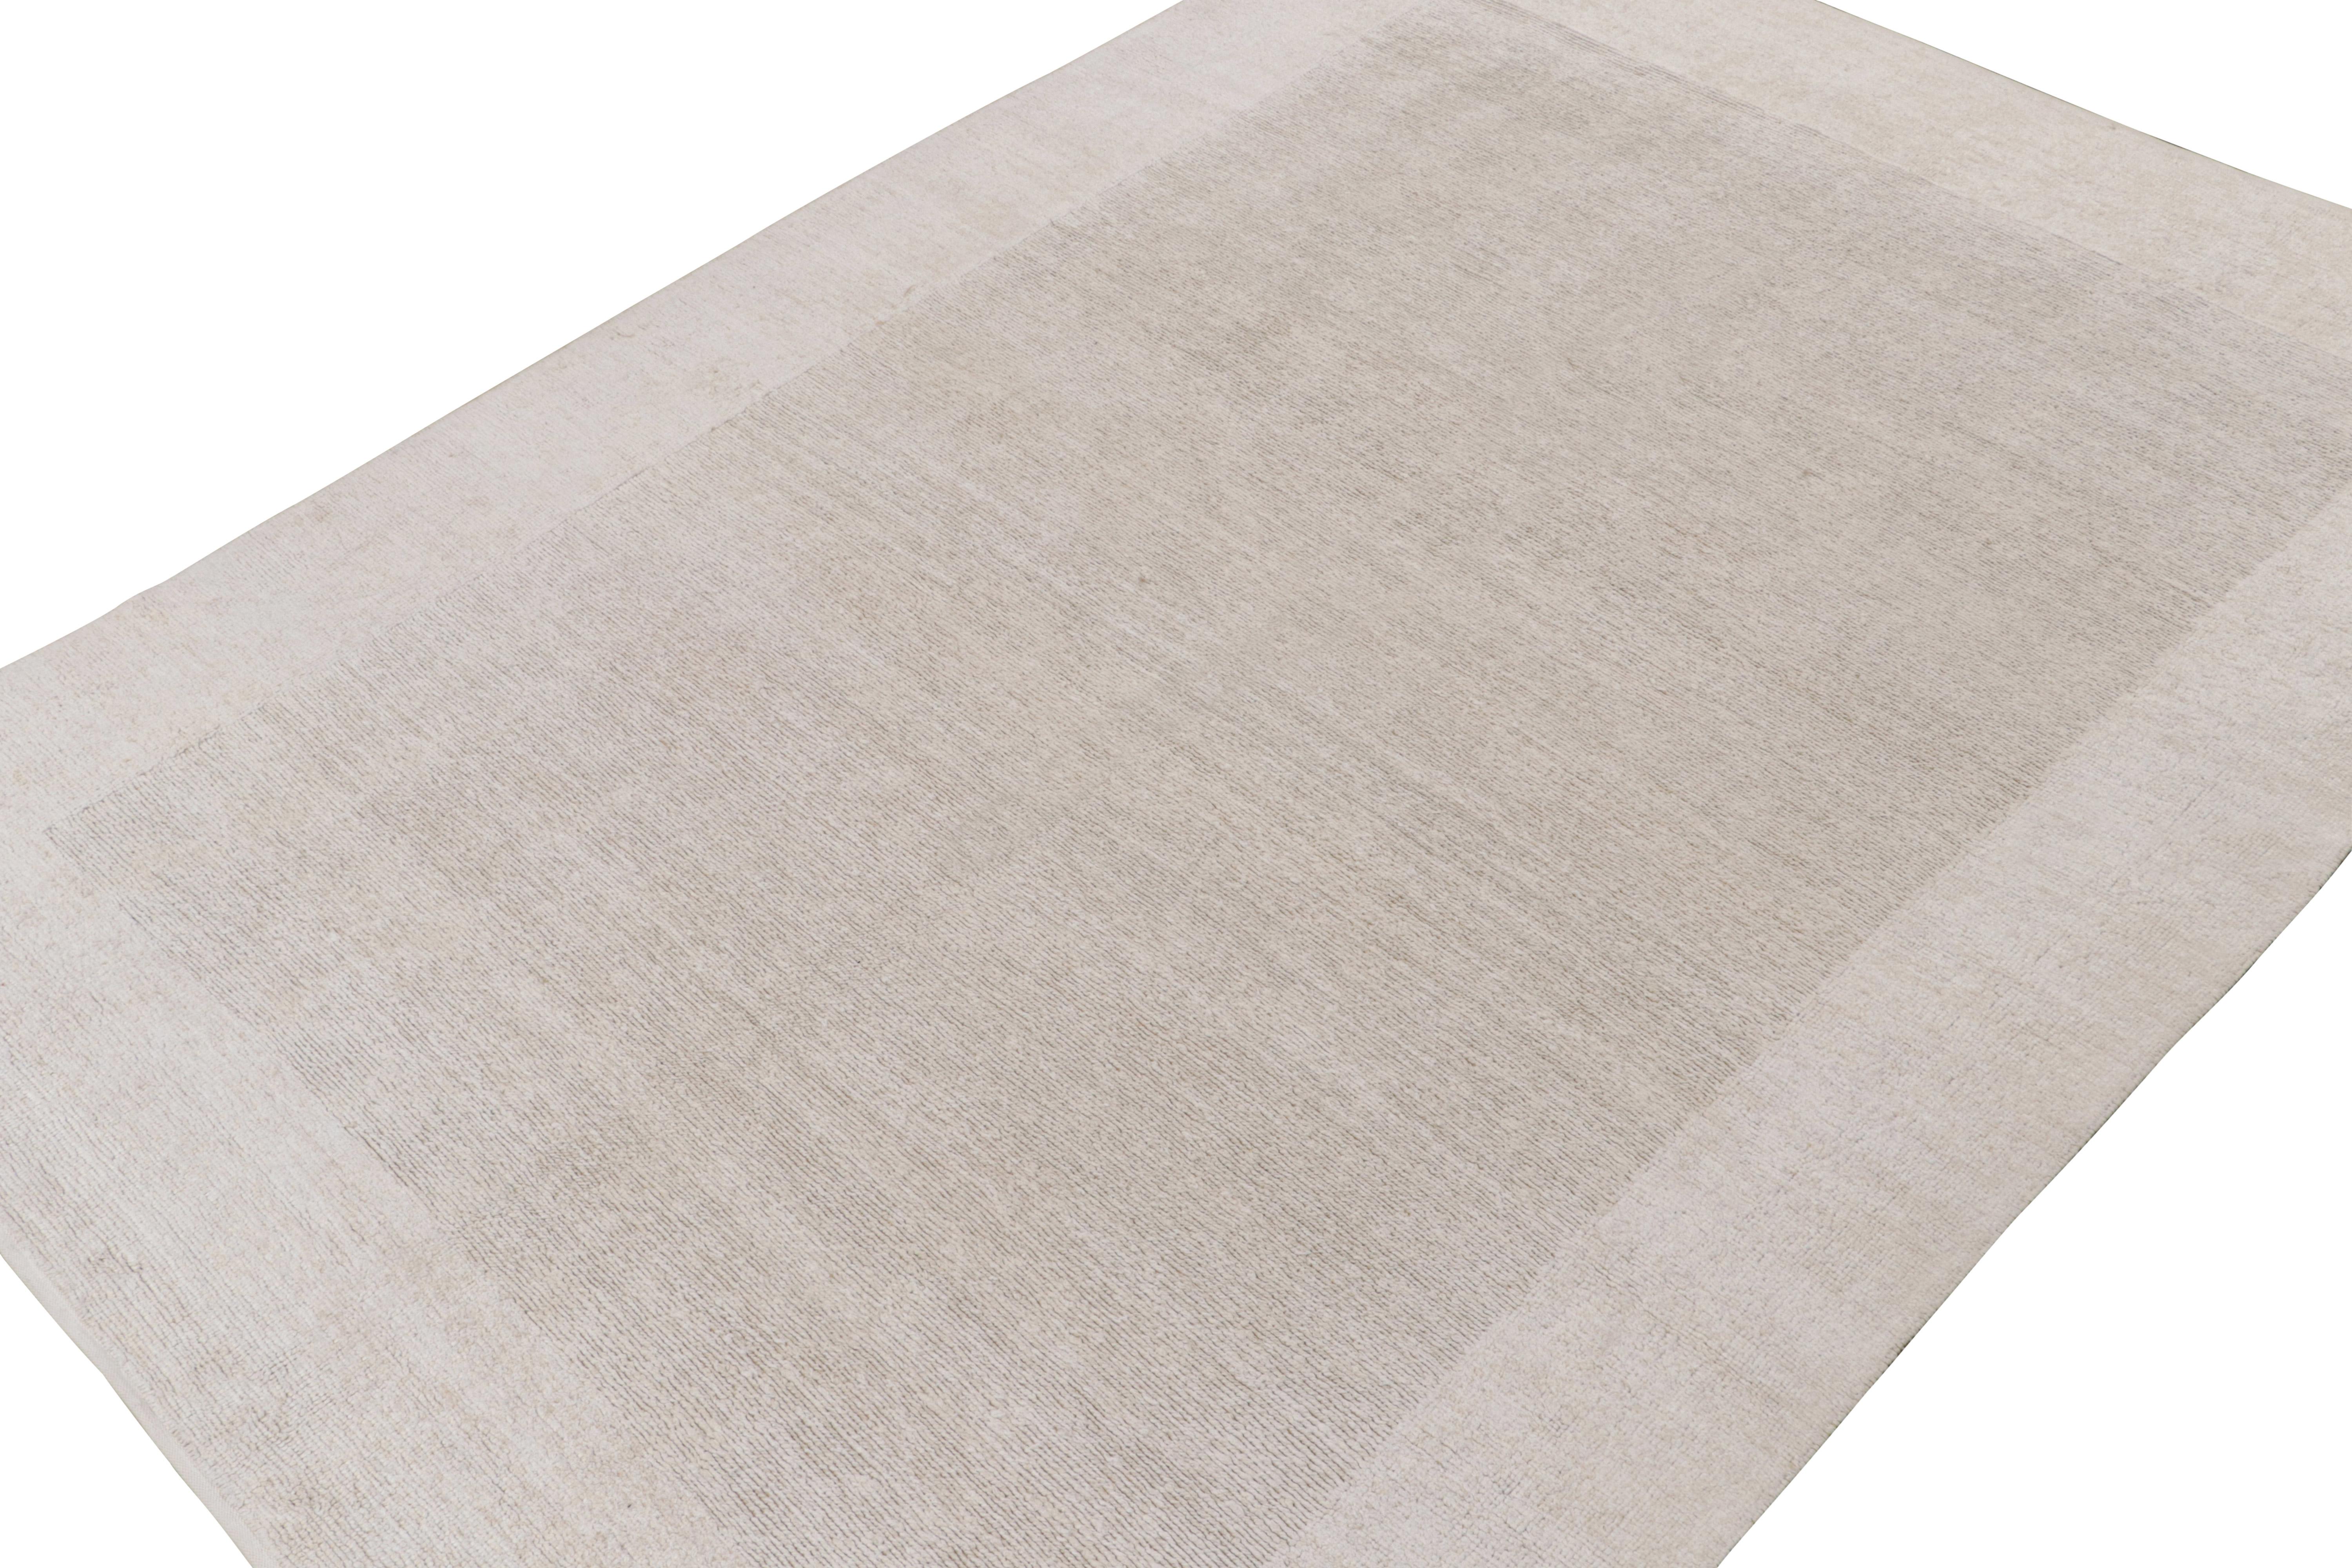 Dieser moderne Teppich im Format 9x12 ist eine aufregende Neuheit in der Modern Collection'S von Rug & Kilim. 

Über das Design: 

Das aus natürlichem Hanf handgeknüpfte Design zeichnet sich durch eine minimalistische Sensibilität mit neutralen